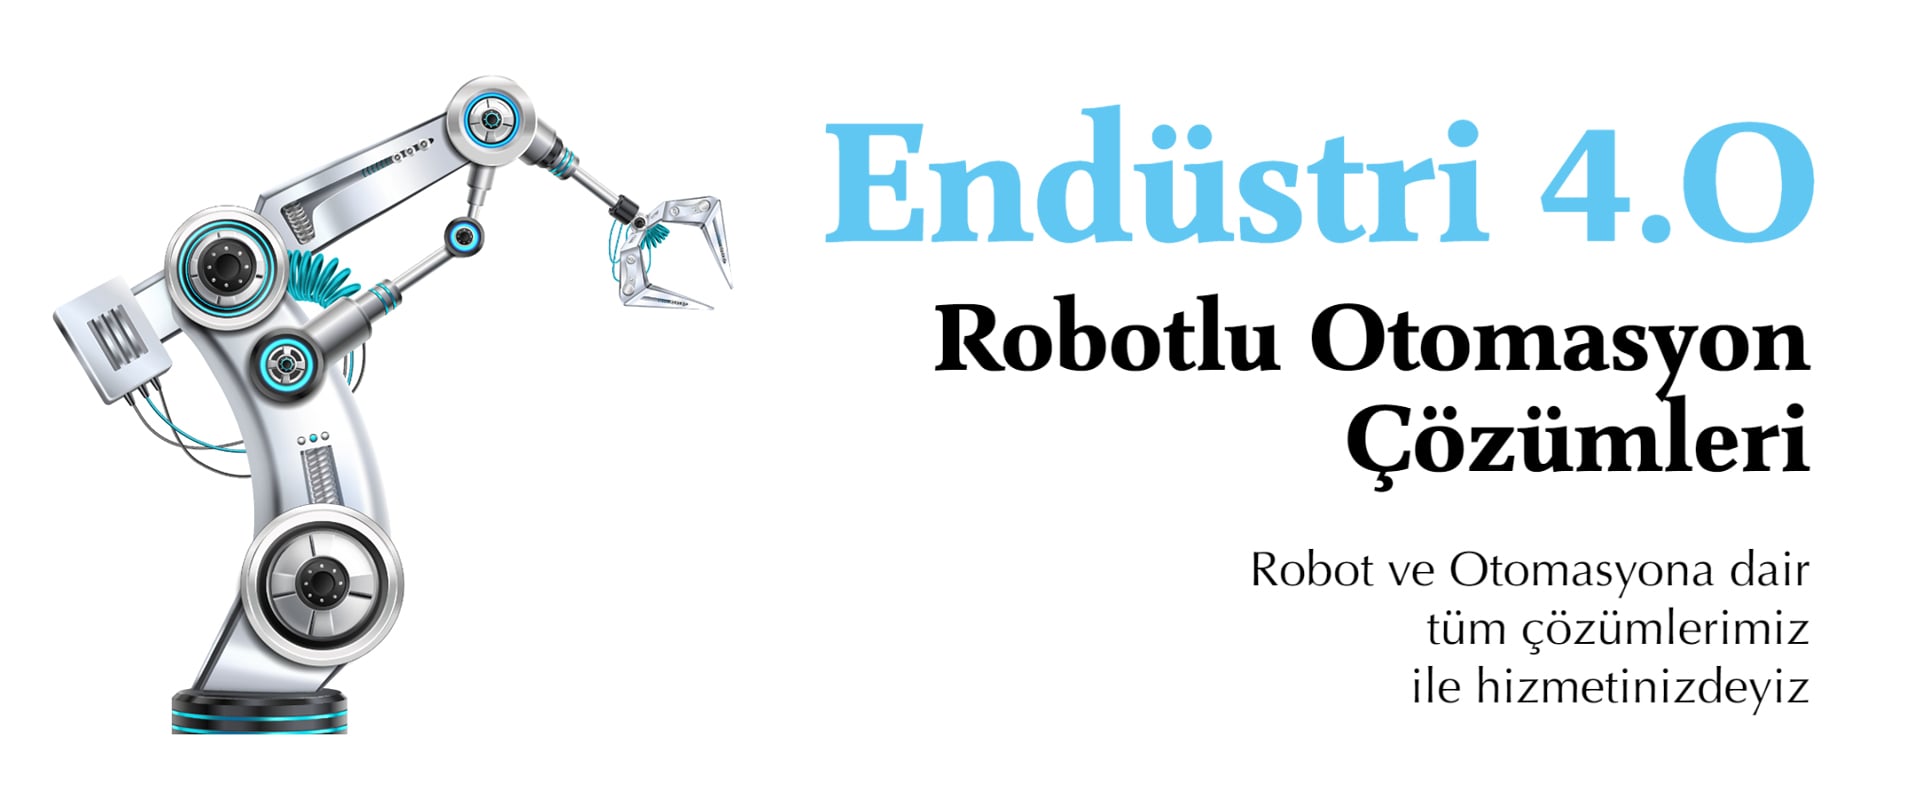 Tezmaksan Robotik Teknolojileri